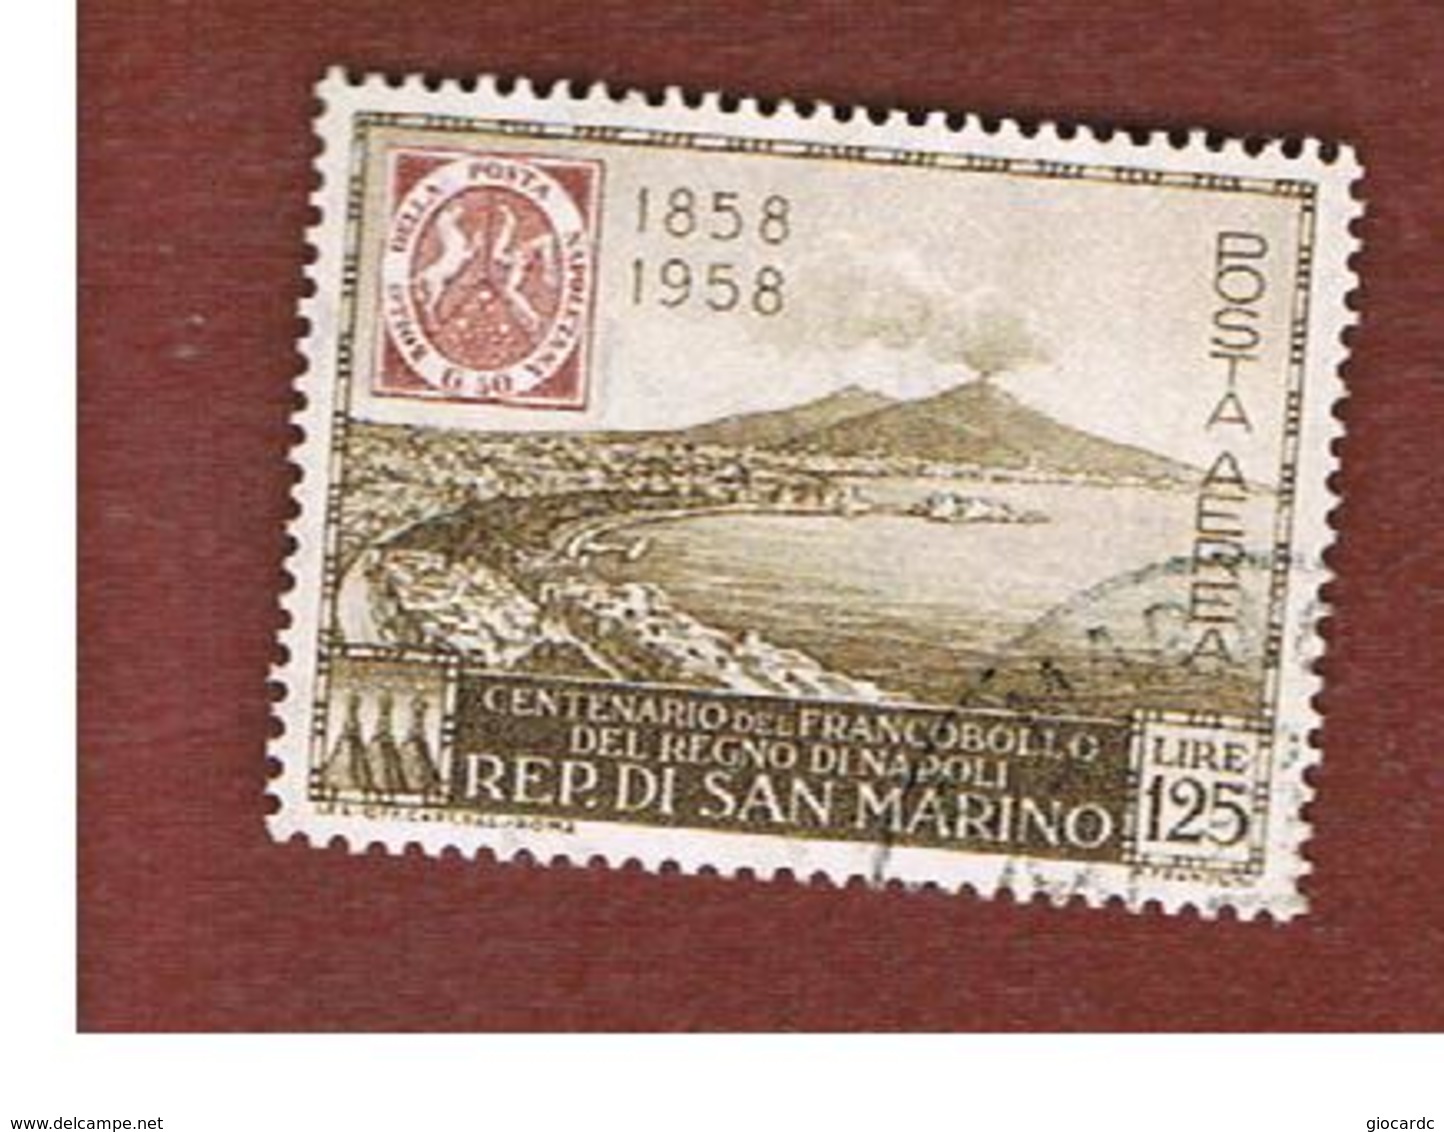 SAN MARINO - UNIF. A121 POSTA AEREA - 1958  CENTENARIO DEI  PRIMI FRANCOOBOLLI DEL REGNO DI NAPOLI   -  USATI (USED°) - Airmail